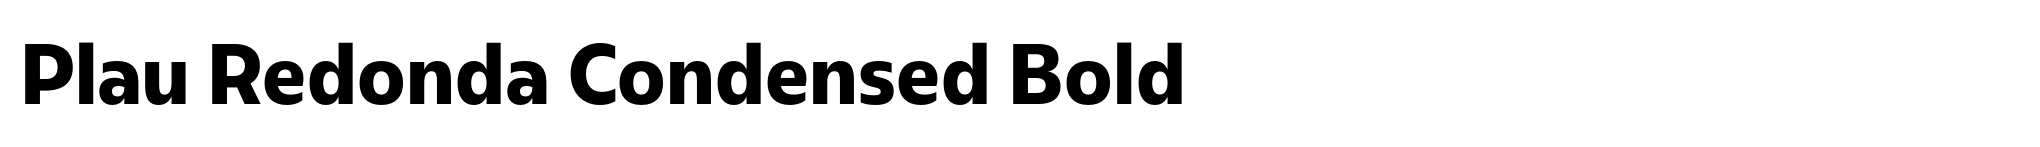 Plau Redonda Condensed Bold image